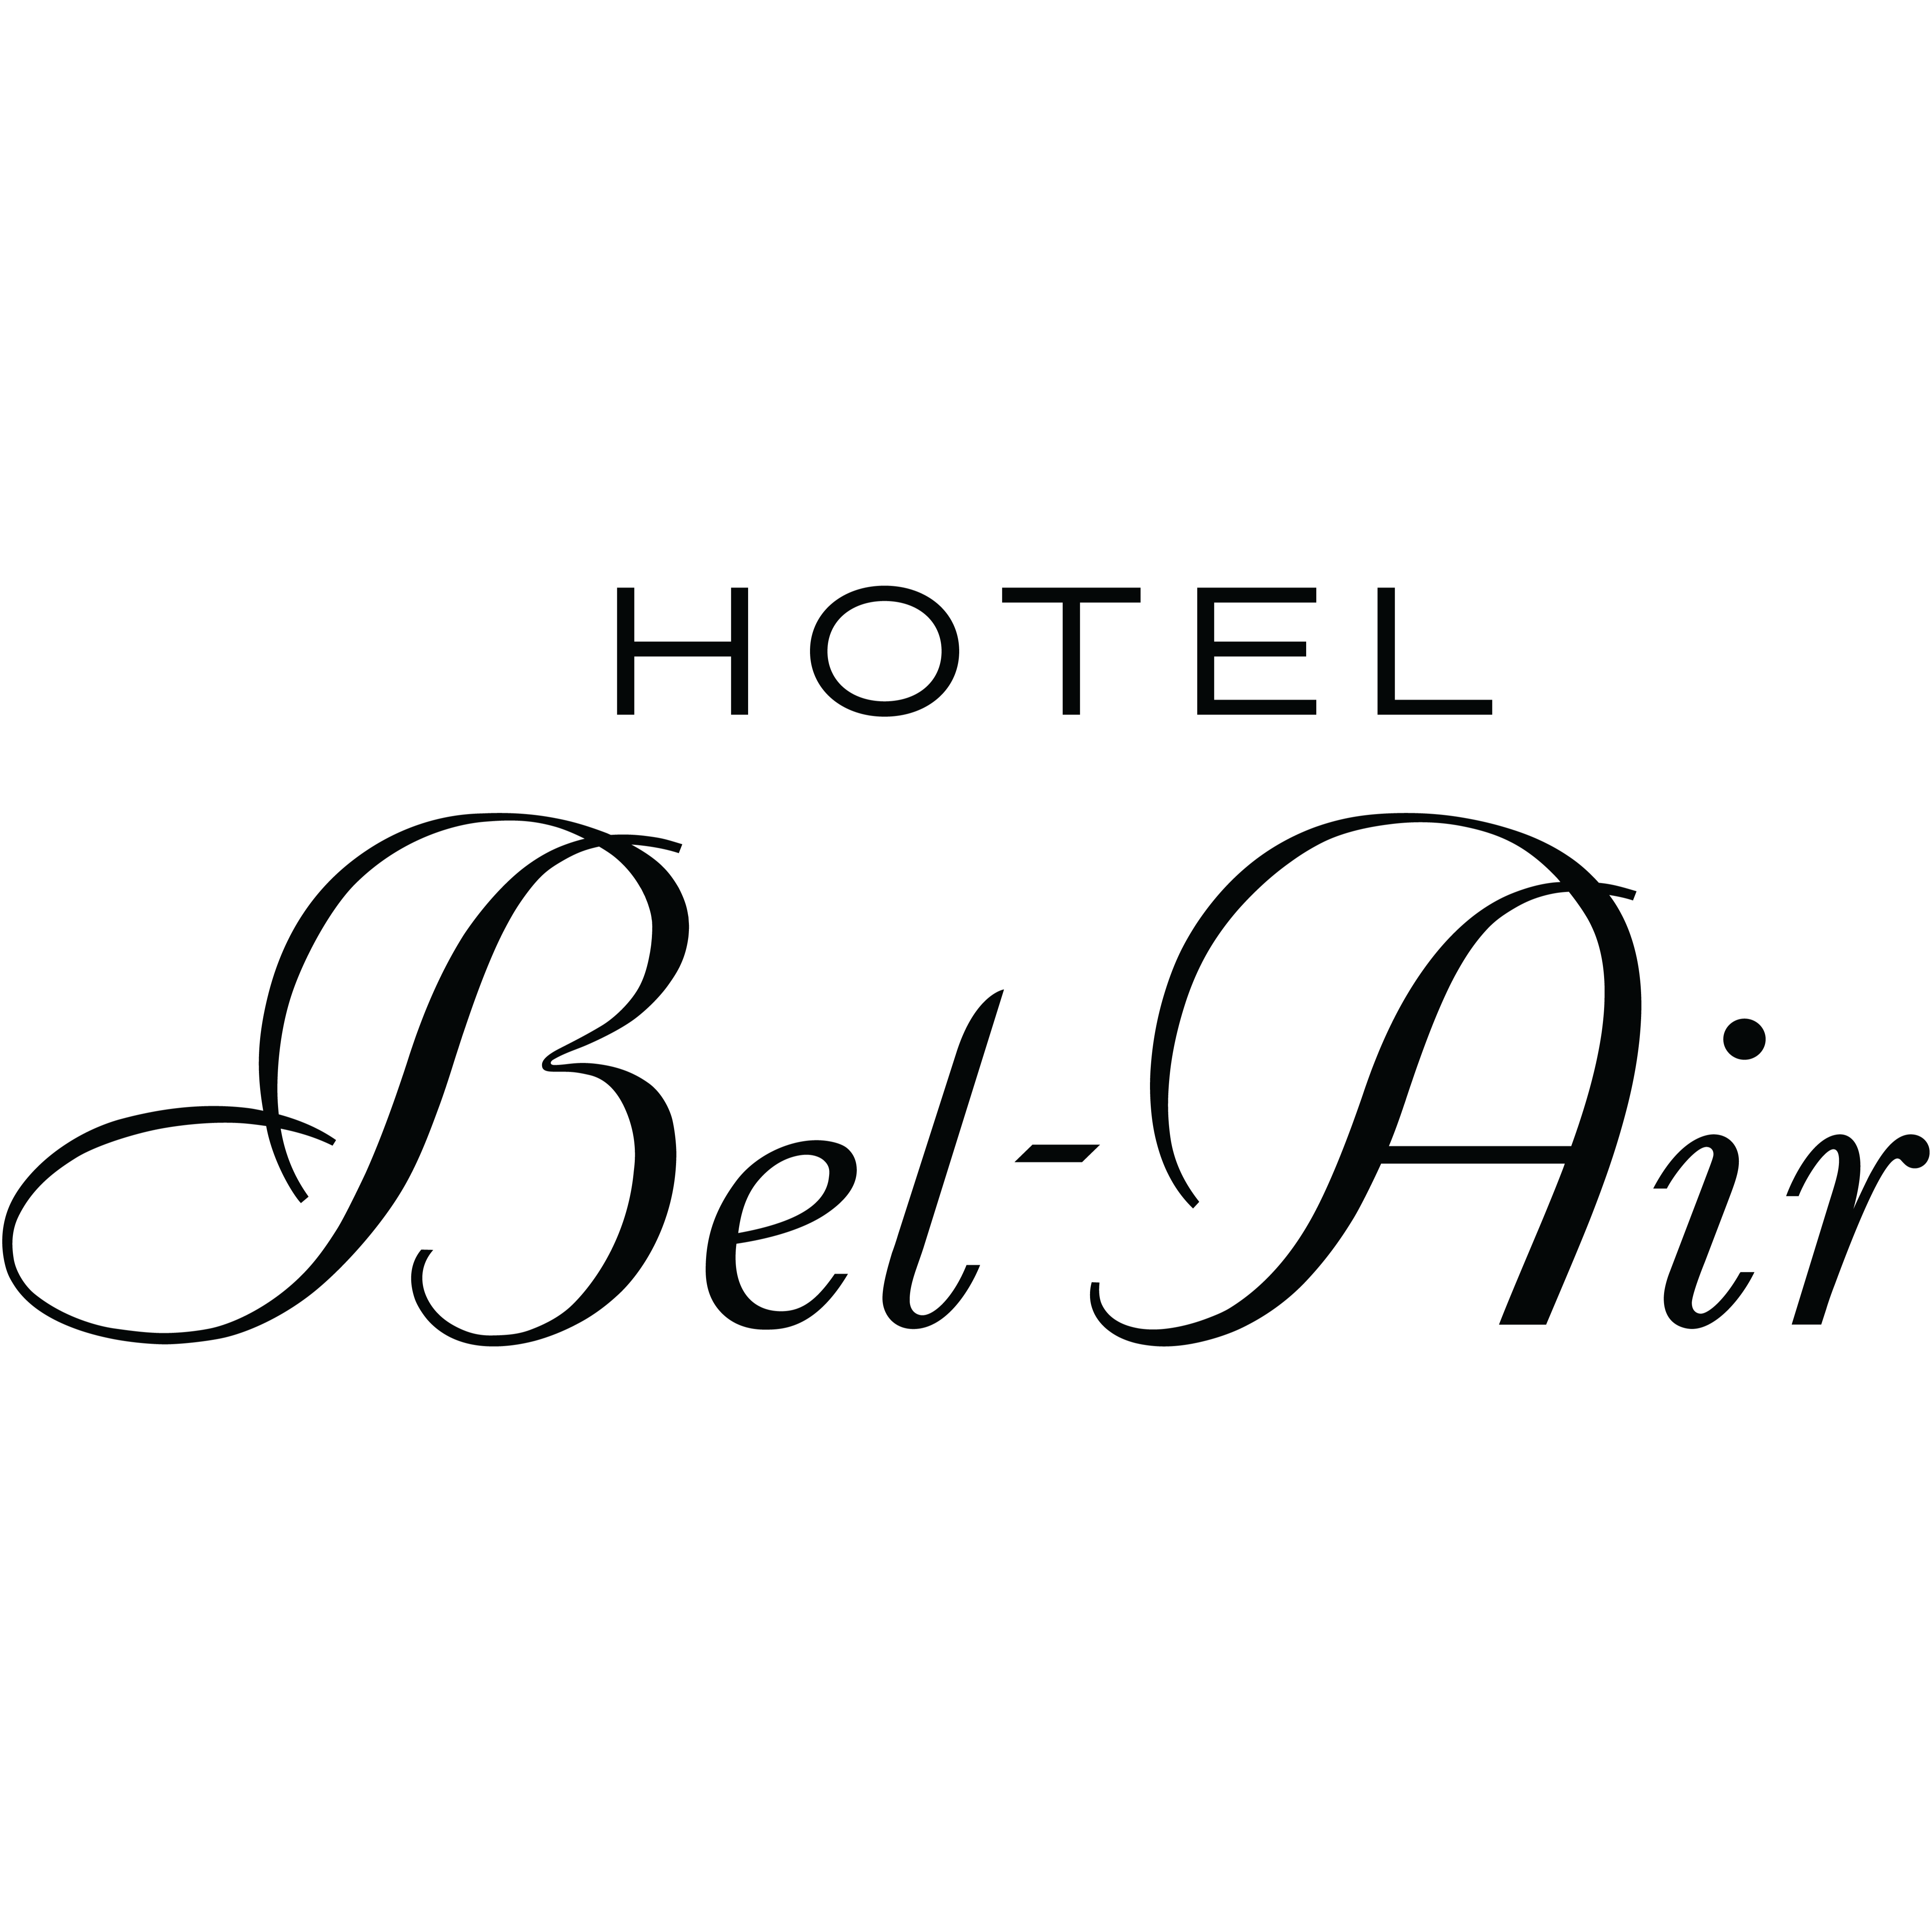 Hotel Bel-Air - Los Angeles, CA 90077 - (310)472-1211 | ShowMeLocal.com